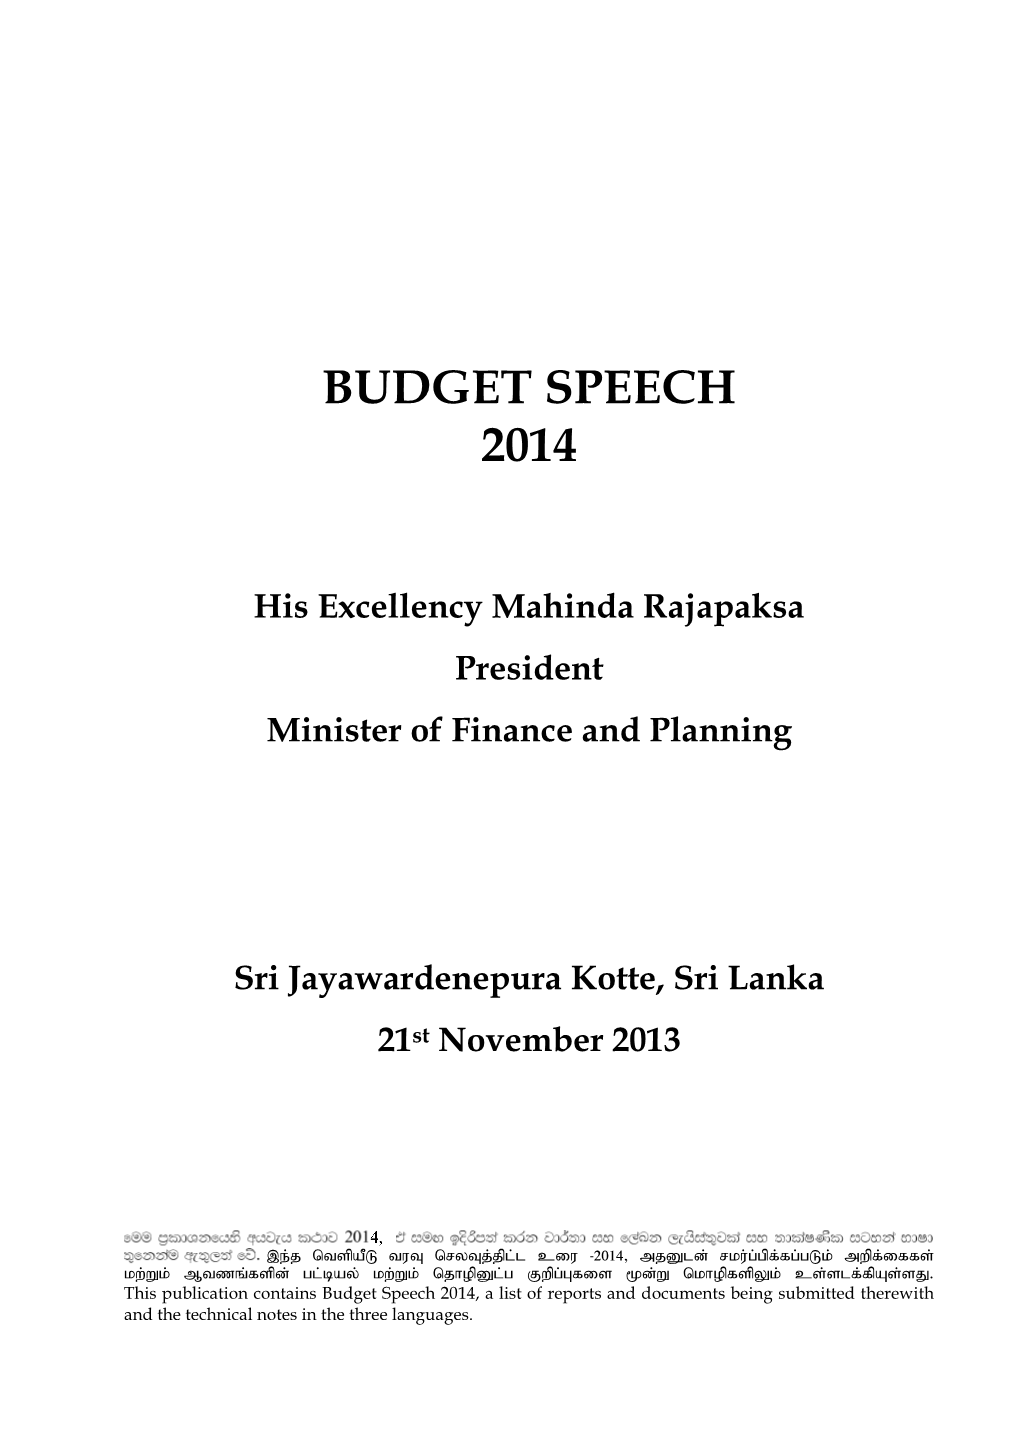 Budget Speech 2014